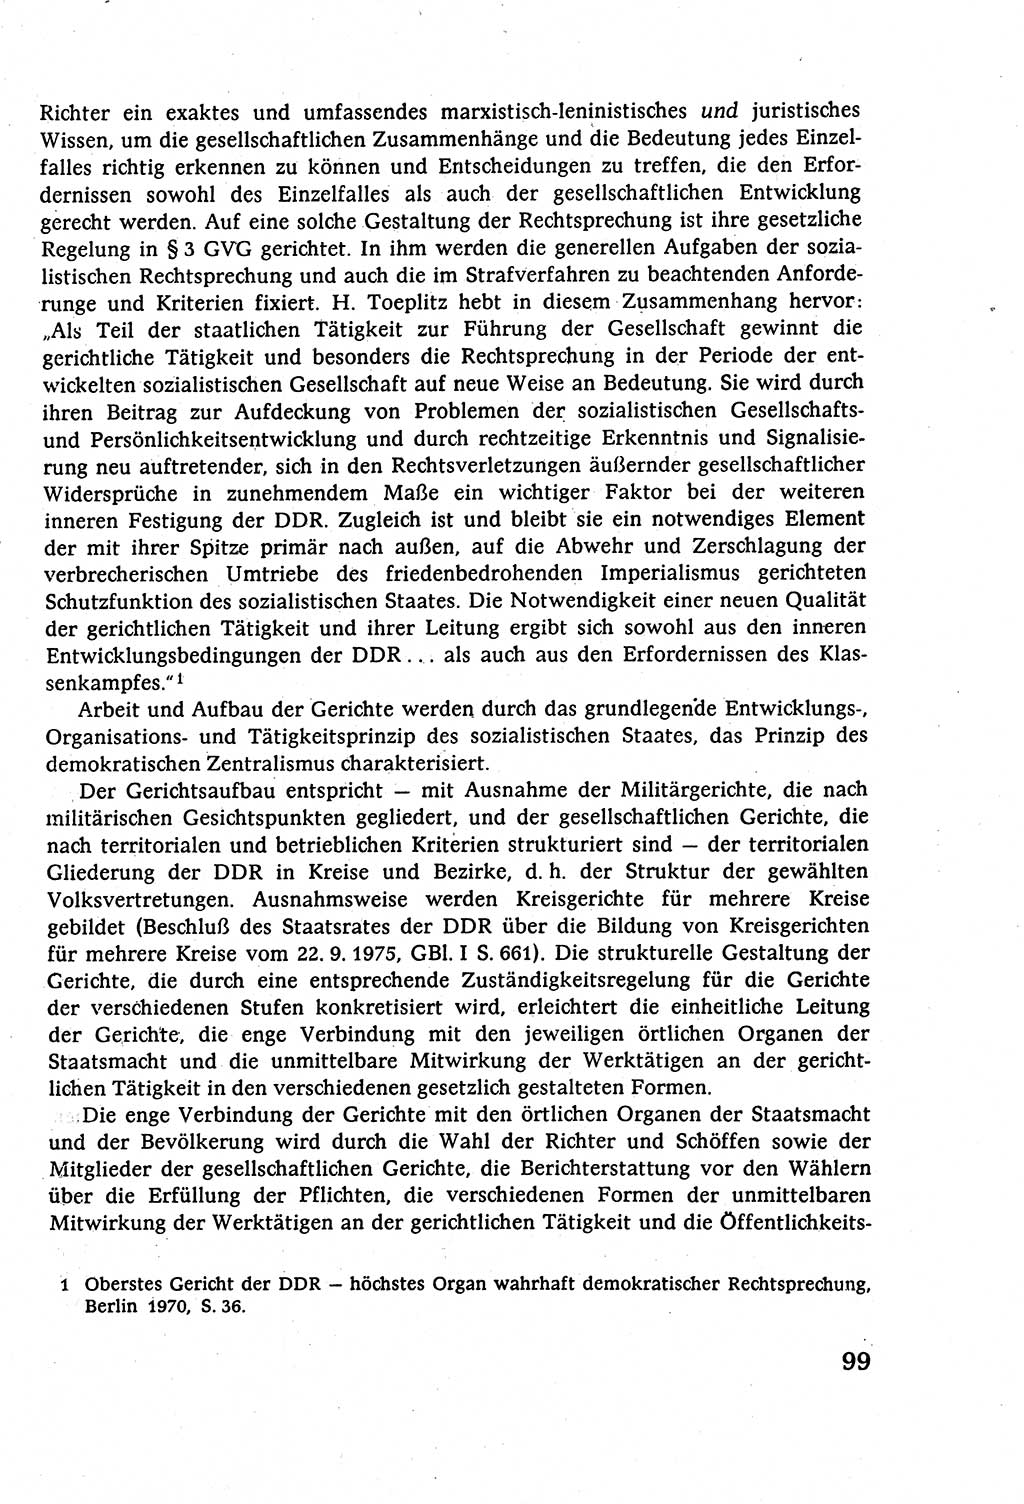 Strafverfahrensrecht [Deutsche Demokratische Republik (DDR)], Lehrbuch 1977, Seite 99 (Strafverf.-R. DDR Lb. 1977, S. 99)